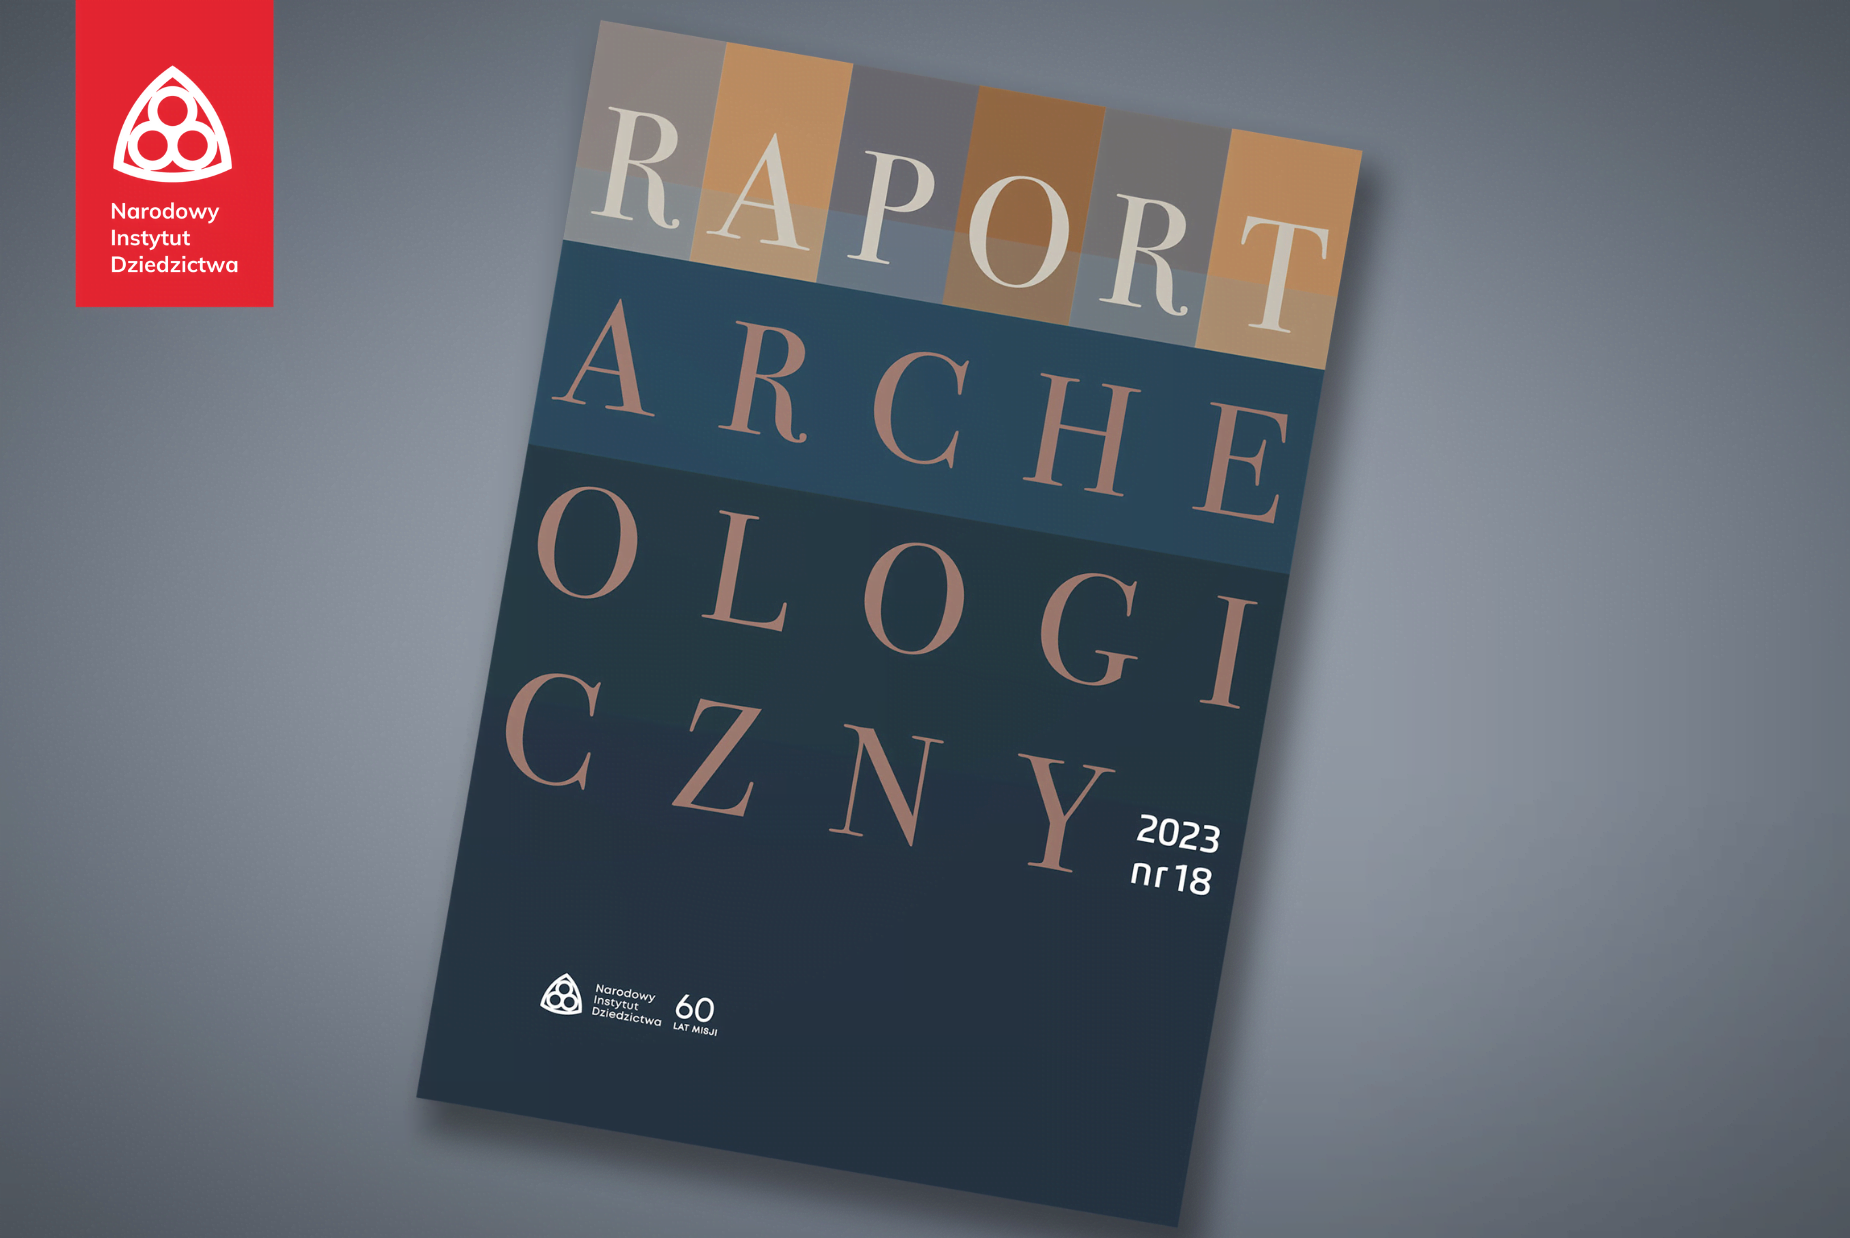 Okładka Raportu Archeologicznego numer 18 z 2022 roku.